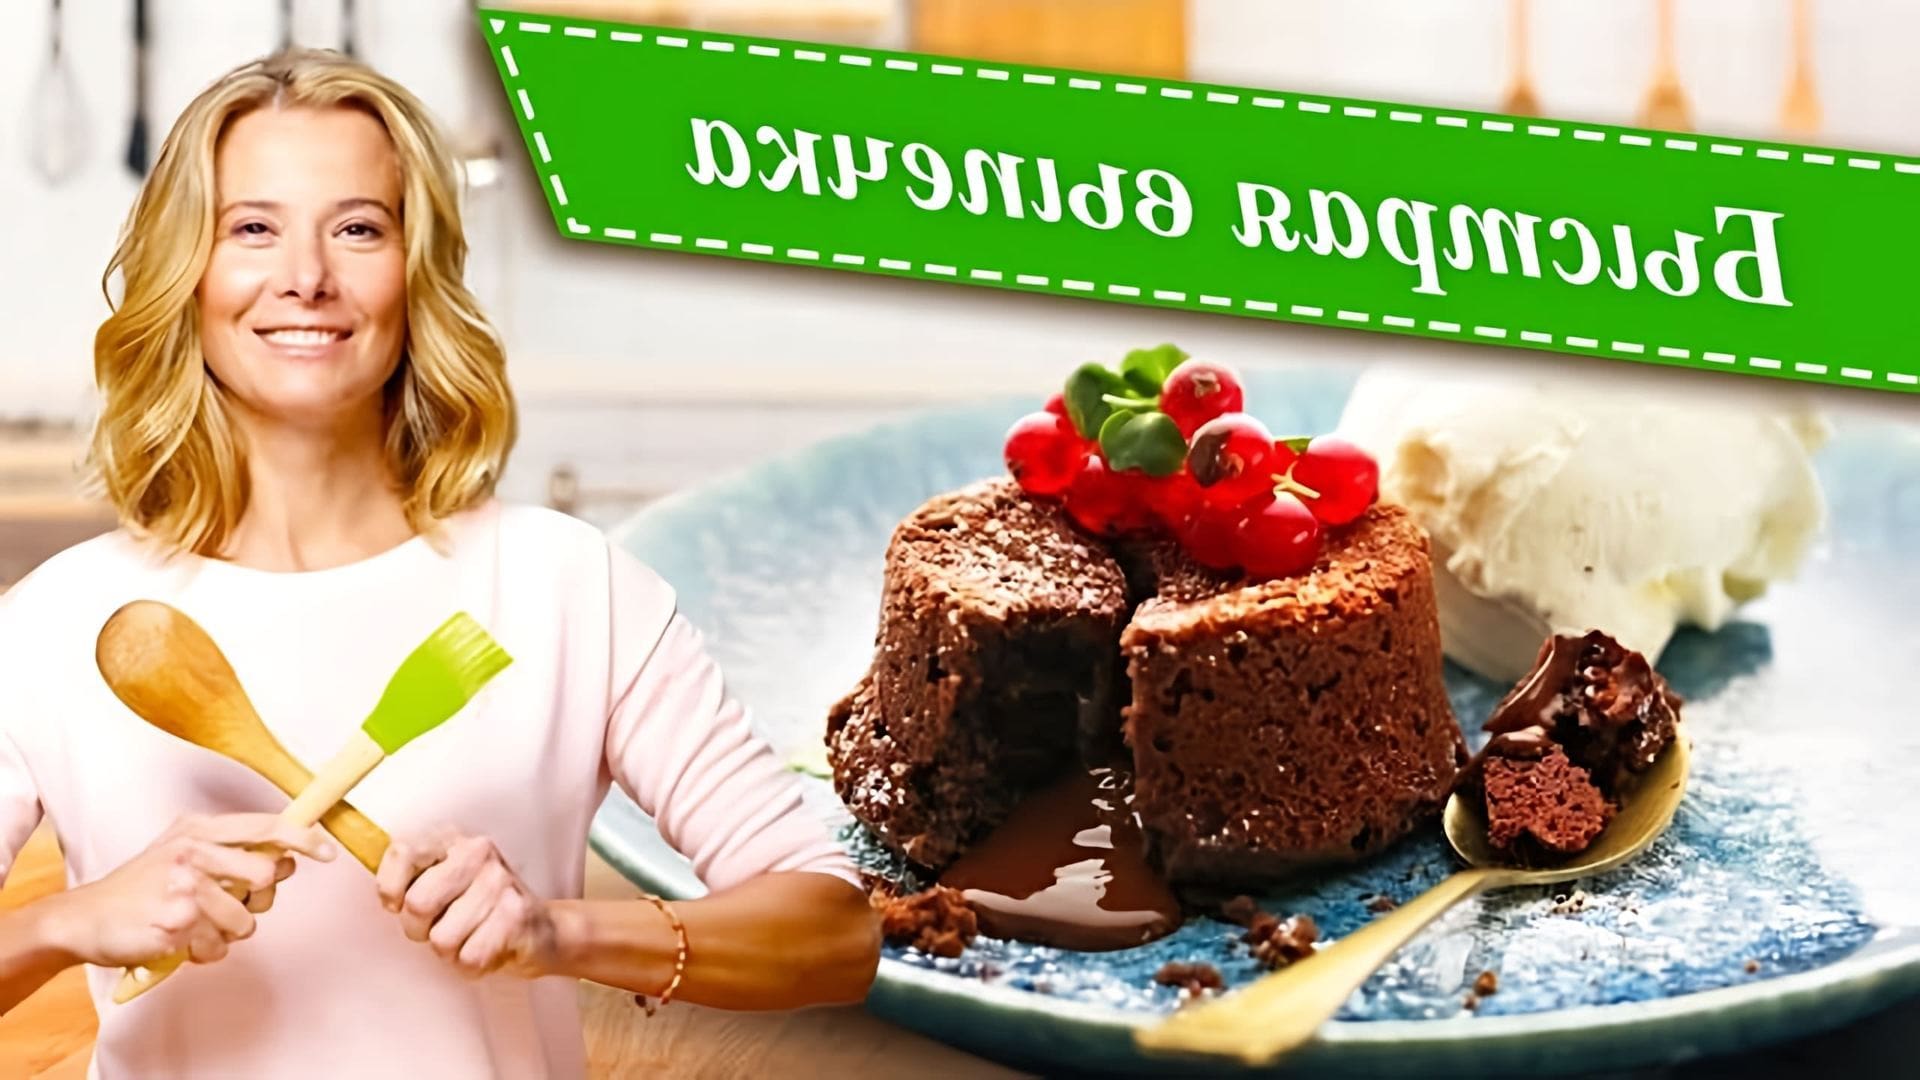 Видео показывает рецепты быстрых домашних выпечек, таких как штрудель, ореховое печенье, брауни, шоколадный фондан и торты